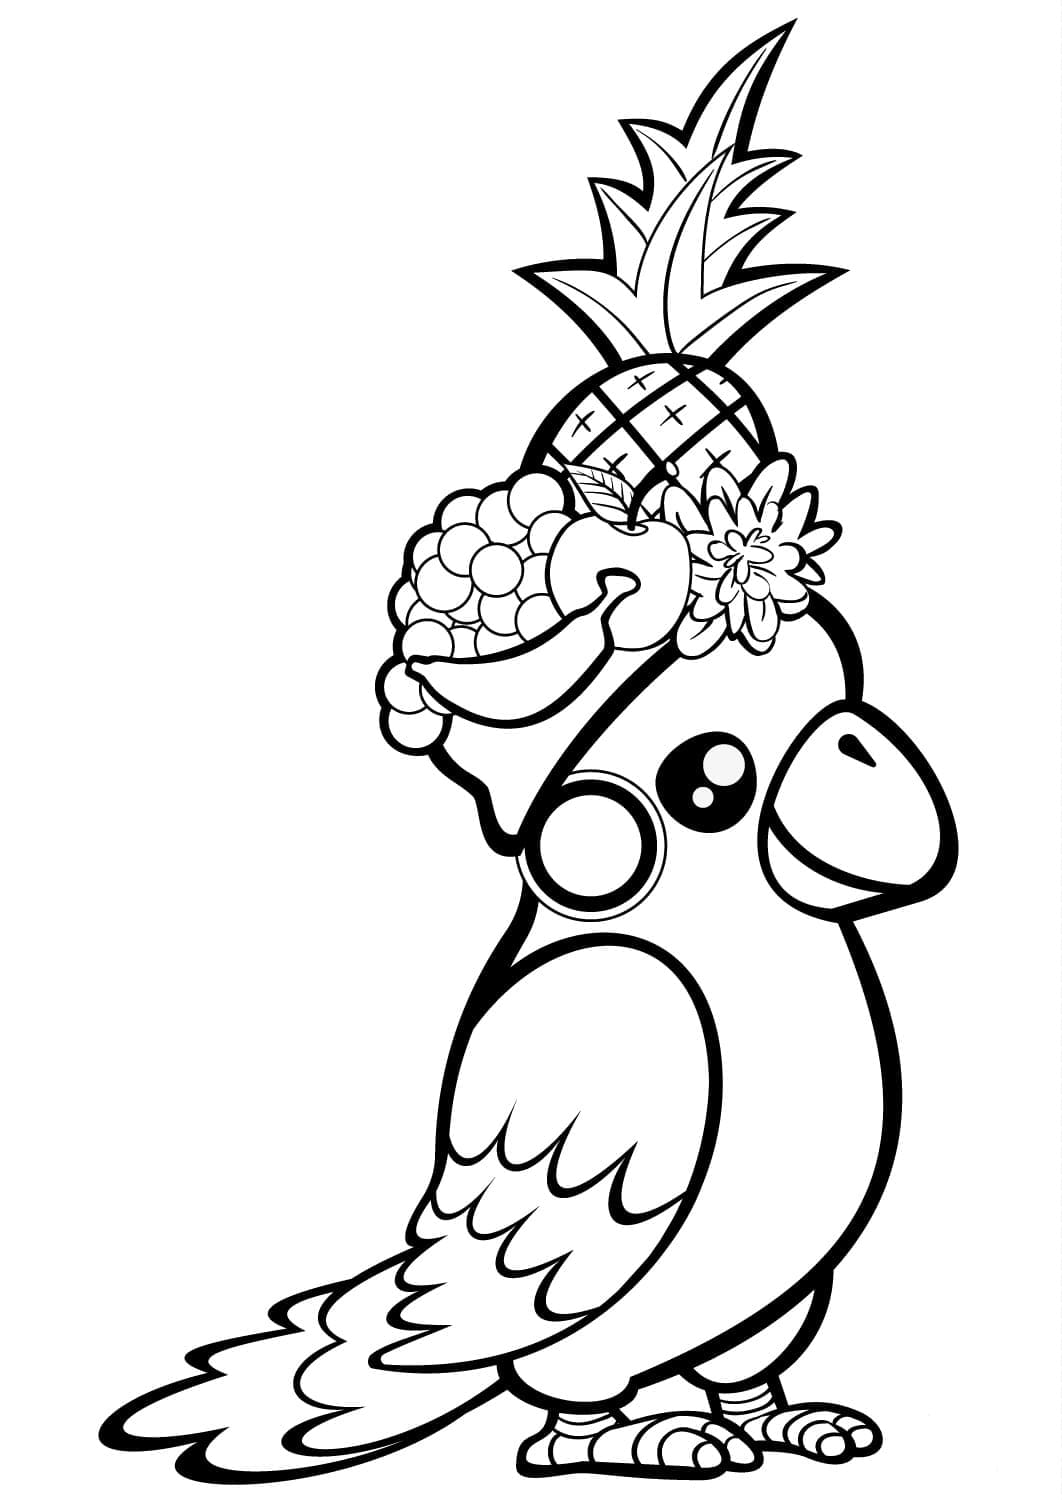 Desenhos de Papagaio para colorir. Imprimir gratuitamente para crianças